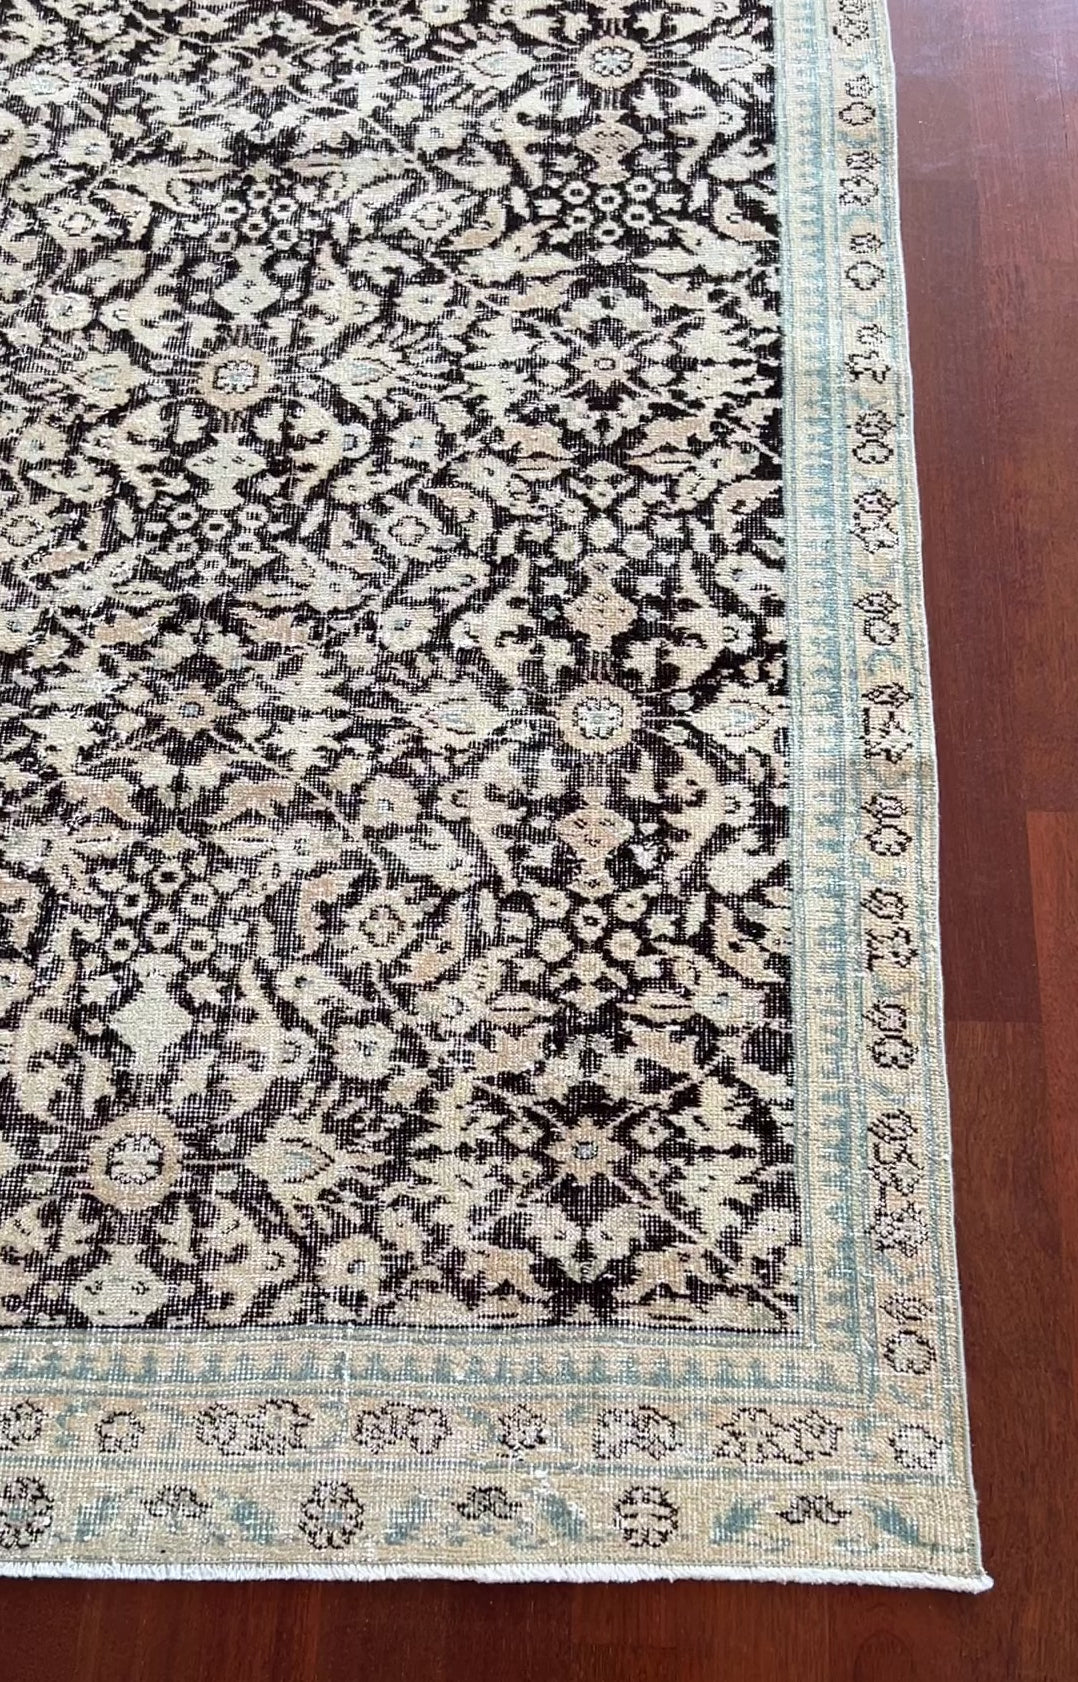 floral minimalist vintage turkish rug palo alto oriental rug shop berkeley rug shop san francisco bay area buy rugs online rug shopping canada toronto canada